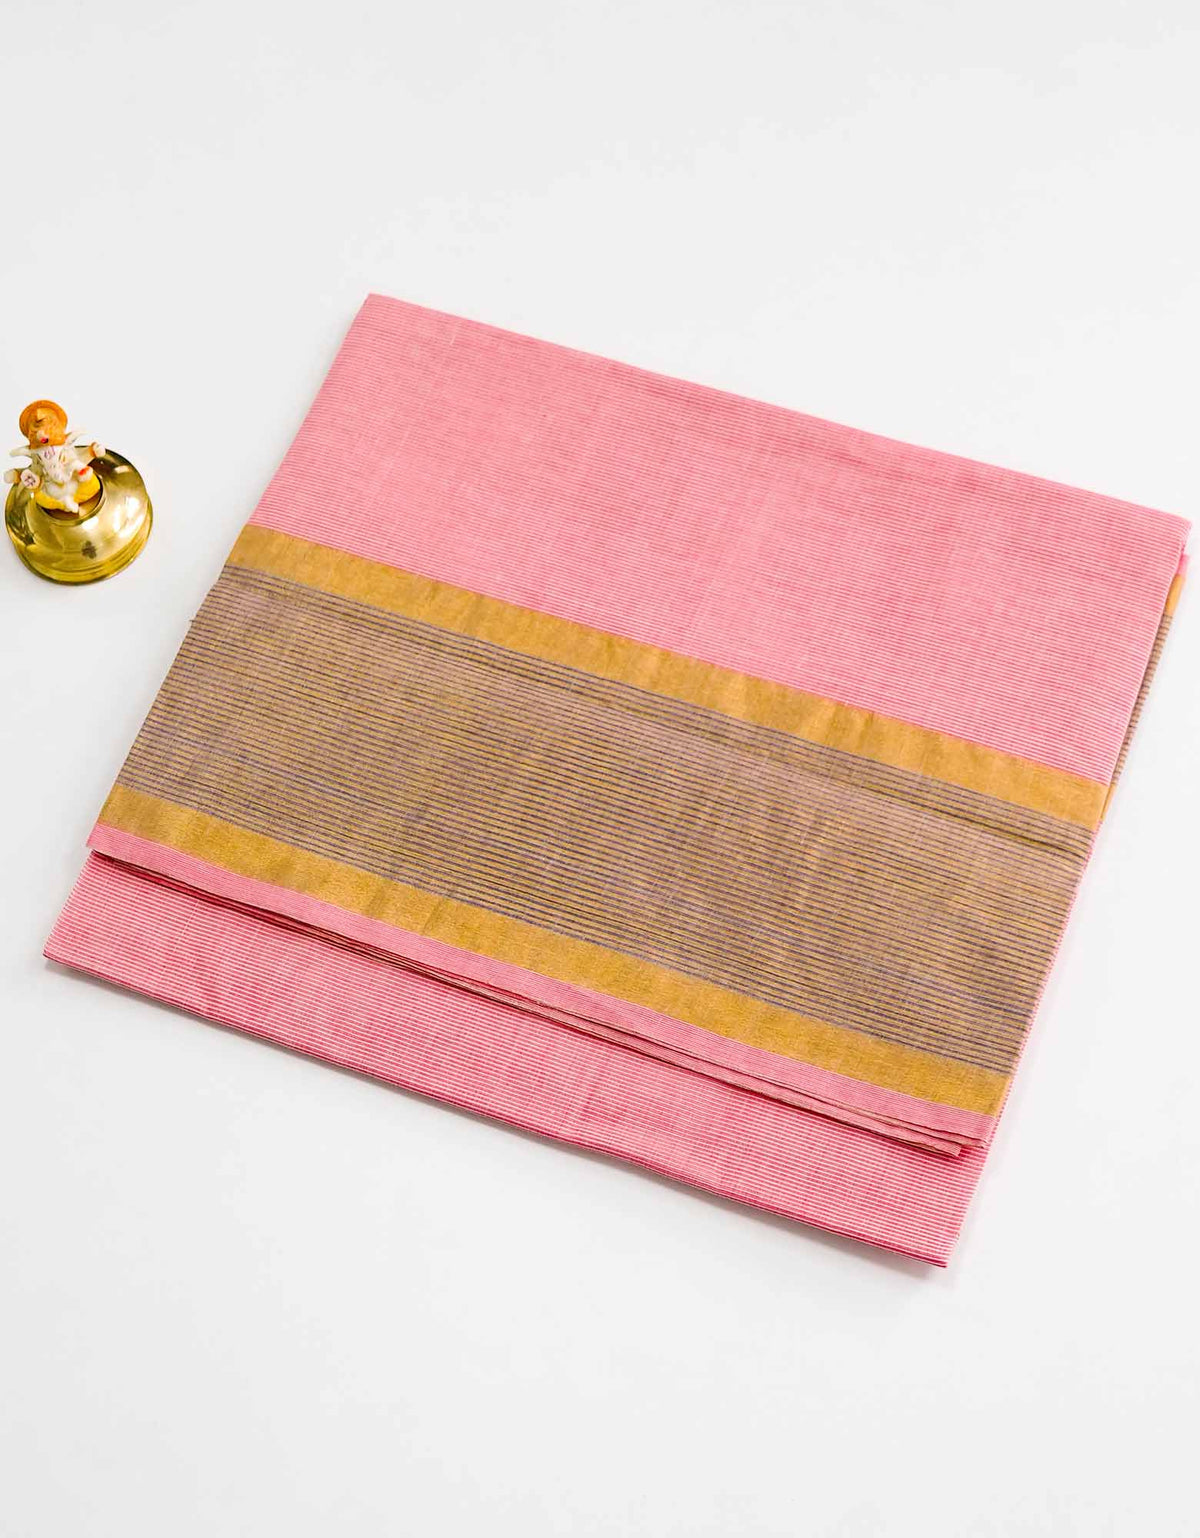 Carnation Pink Tissue cotton saree.